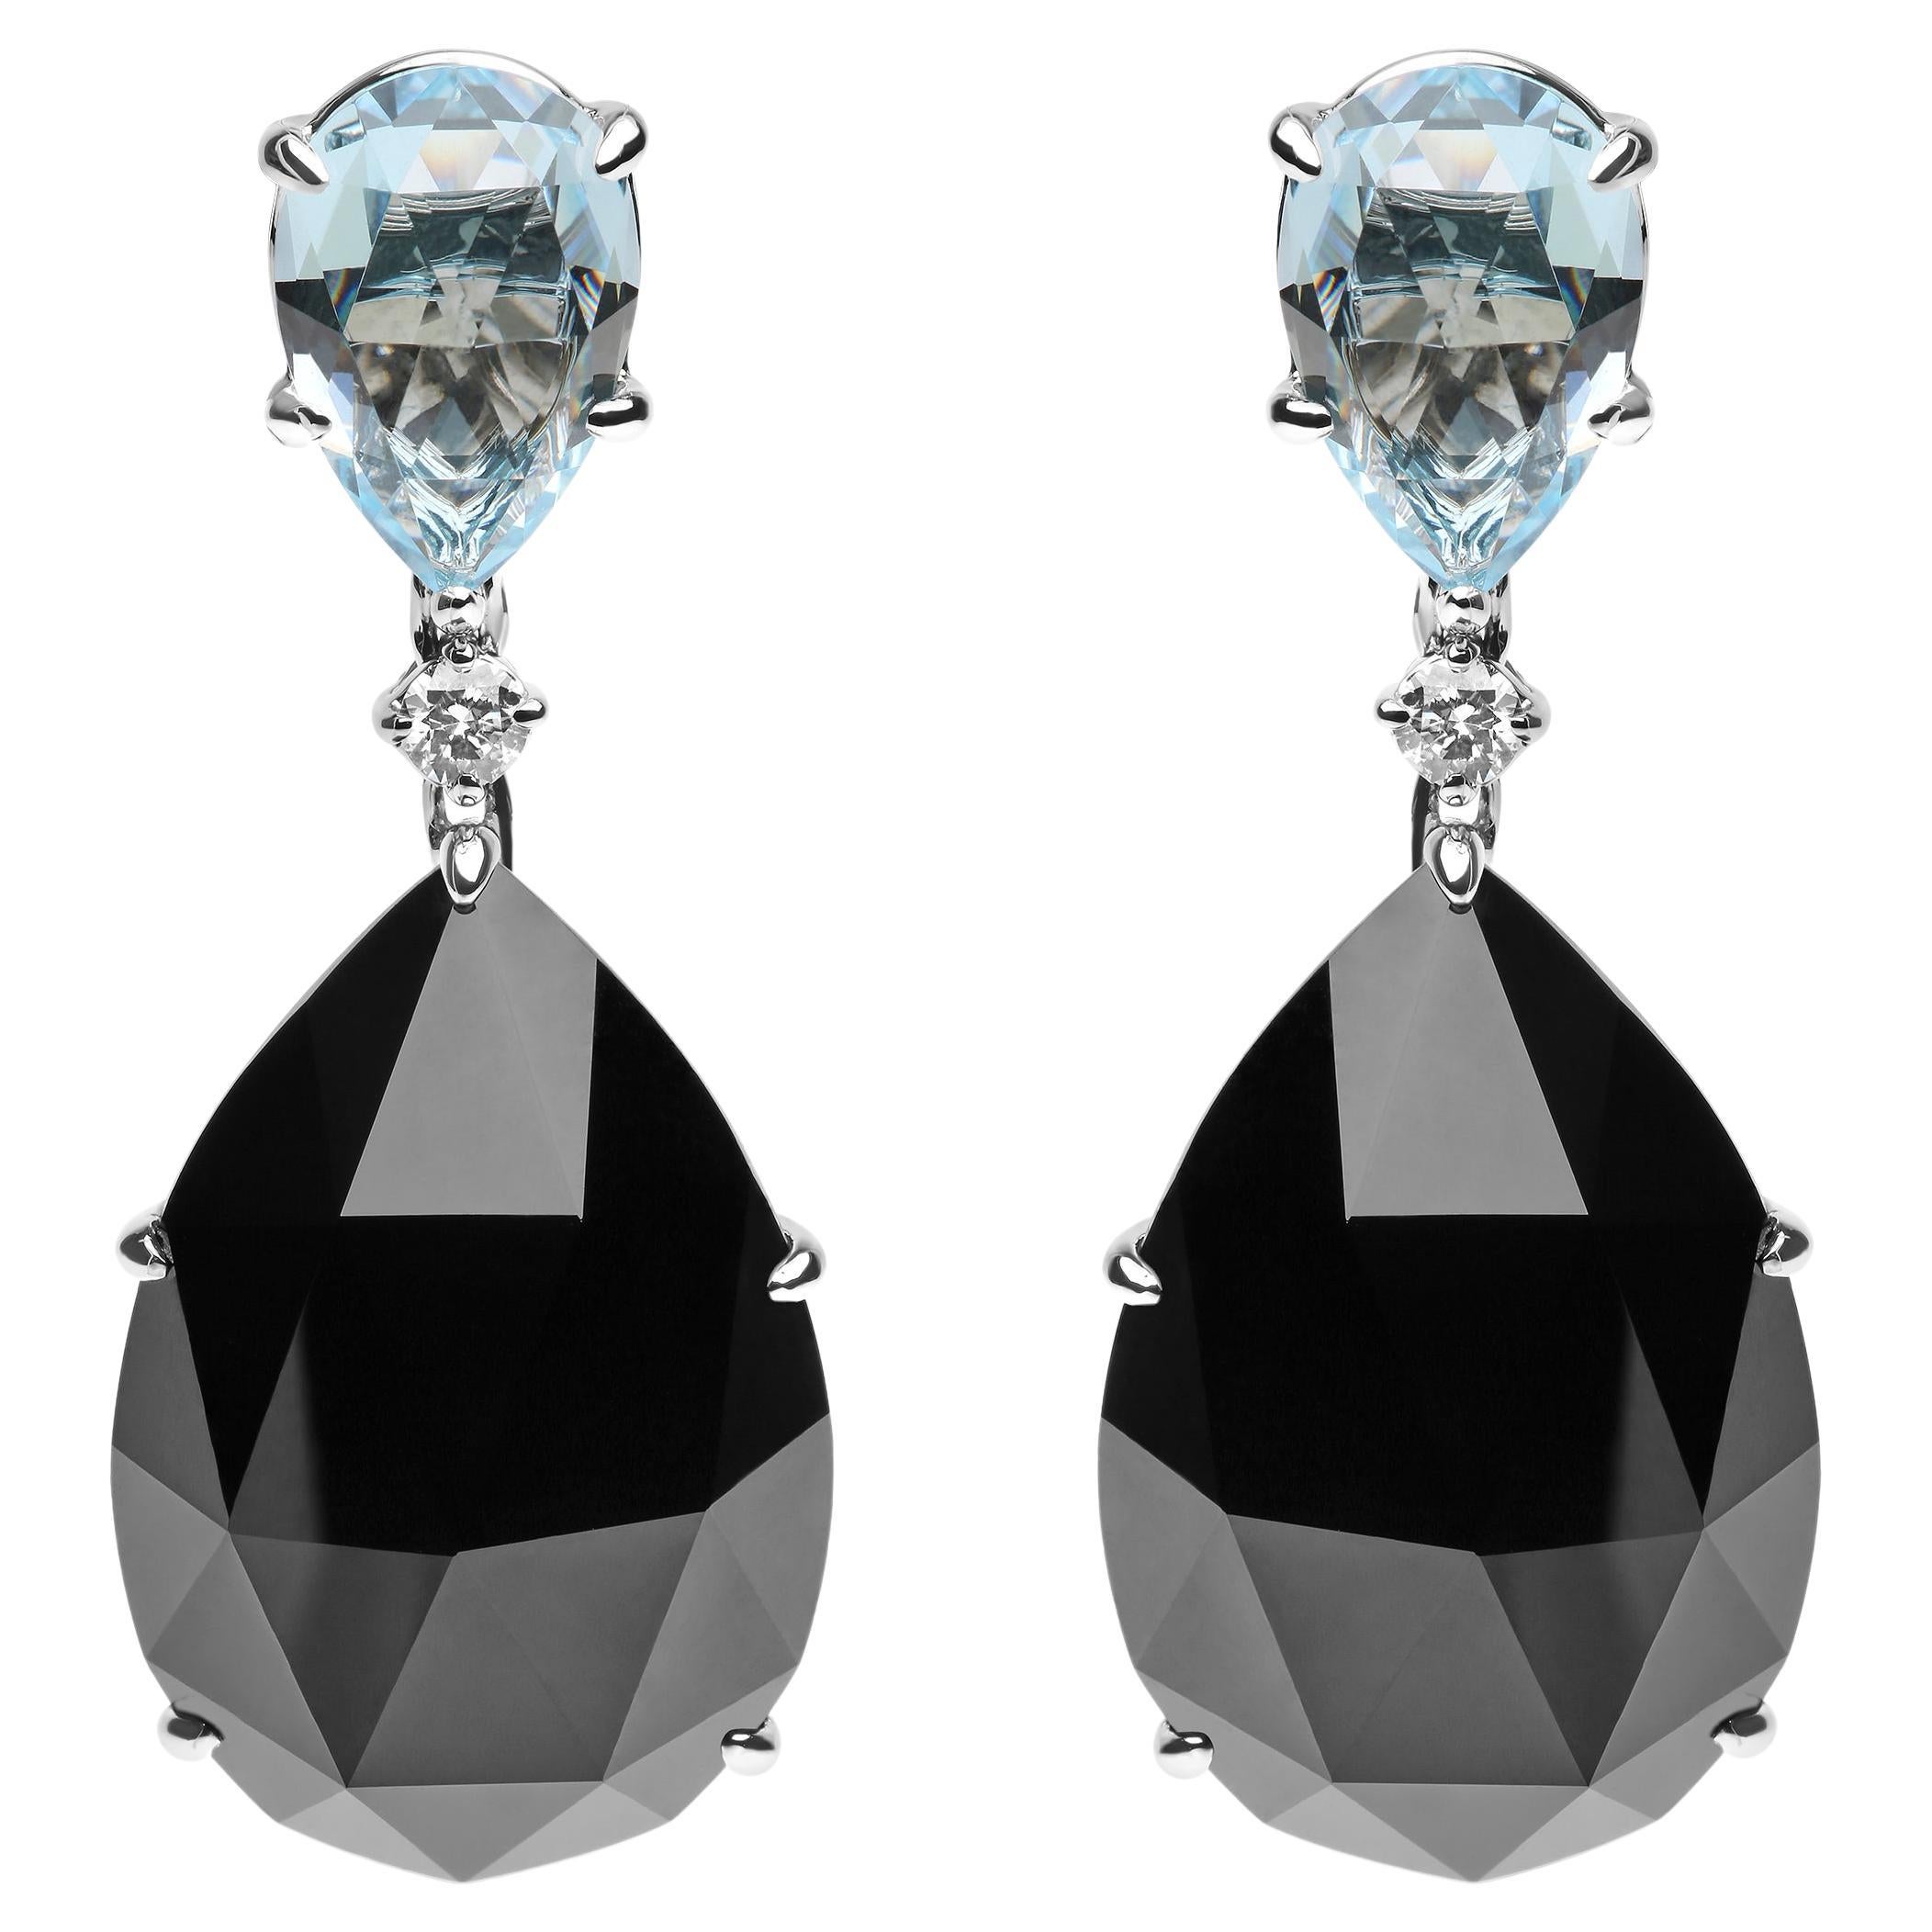 Pendants d'oreilles en or blanc 18 carats avec diamants de 1/5 carat, topaze bleu ciel et onyx noir